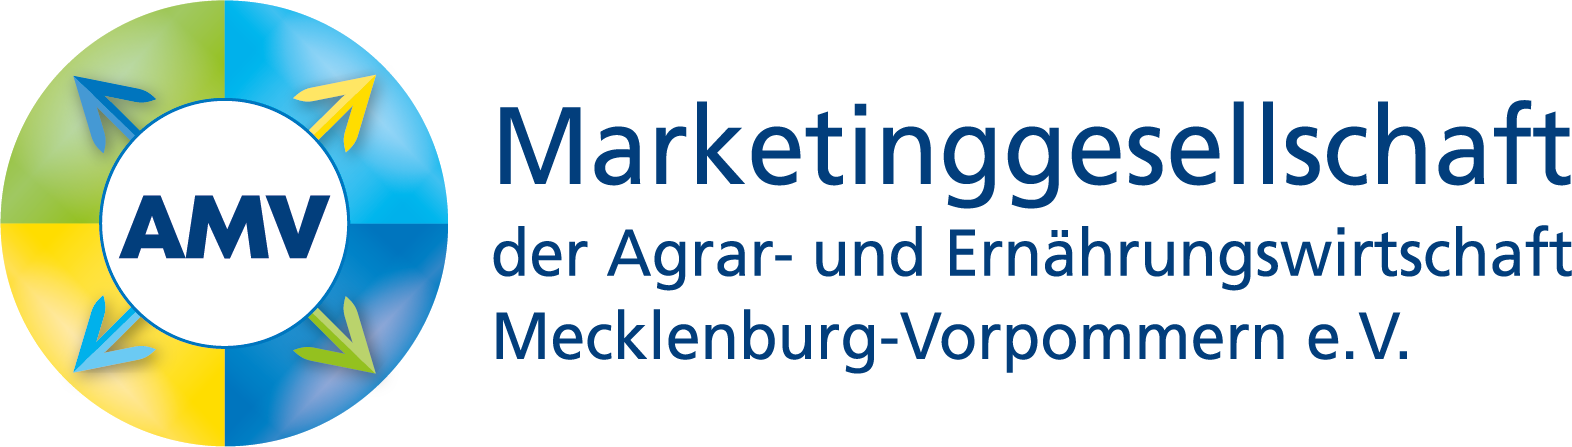 Marketinggesellschaft der Agrar- und Ernährungswirtschaft Mecklenburg-Vorpommern e.V.